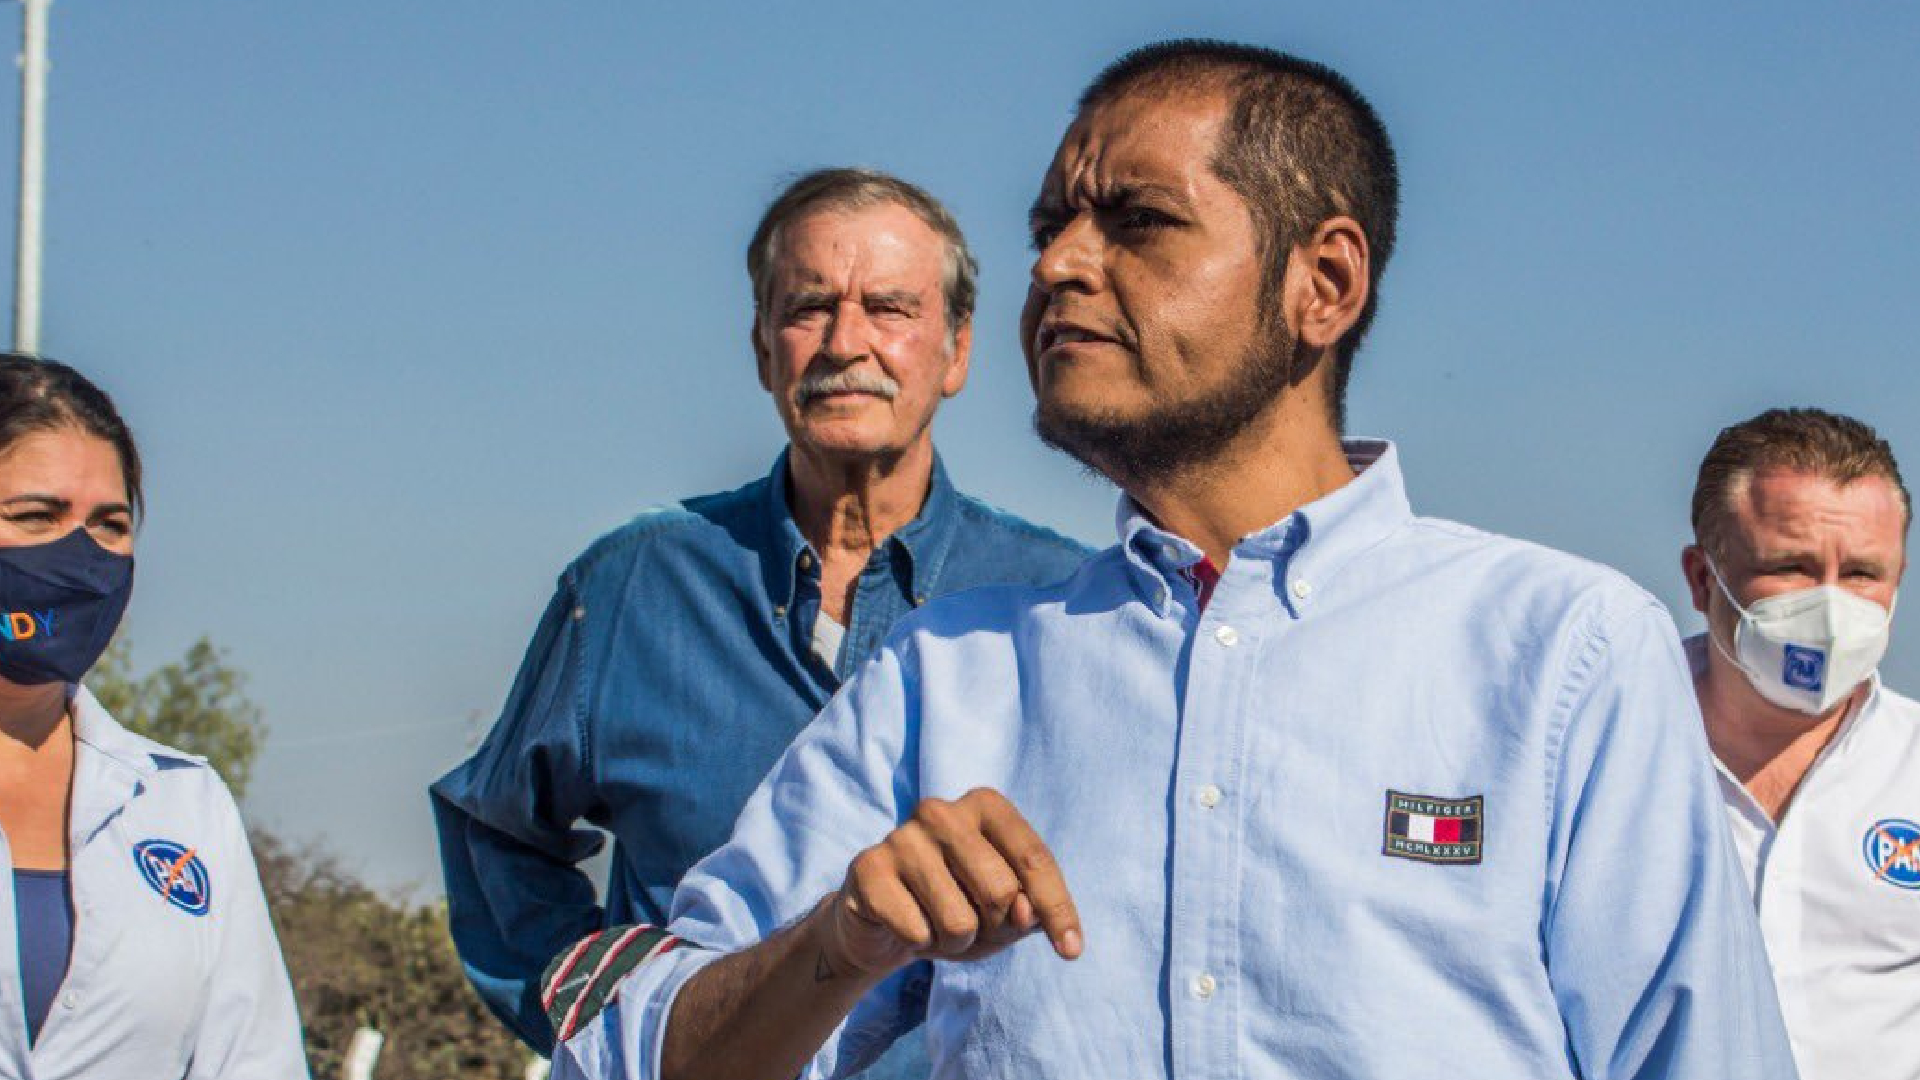 Vicente Fox y Tumbaburros se unen para apoyar al PAN (Foto: Twitter / @LauraMex)